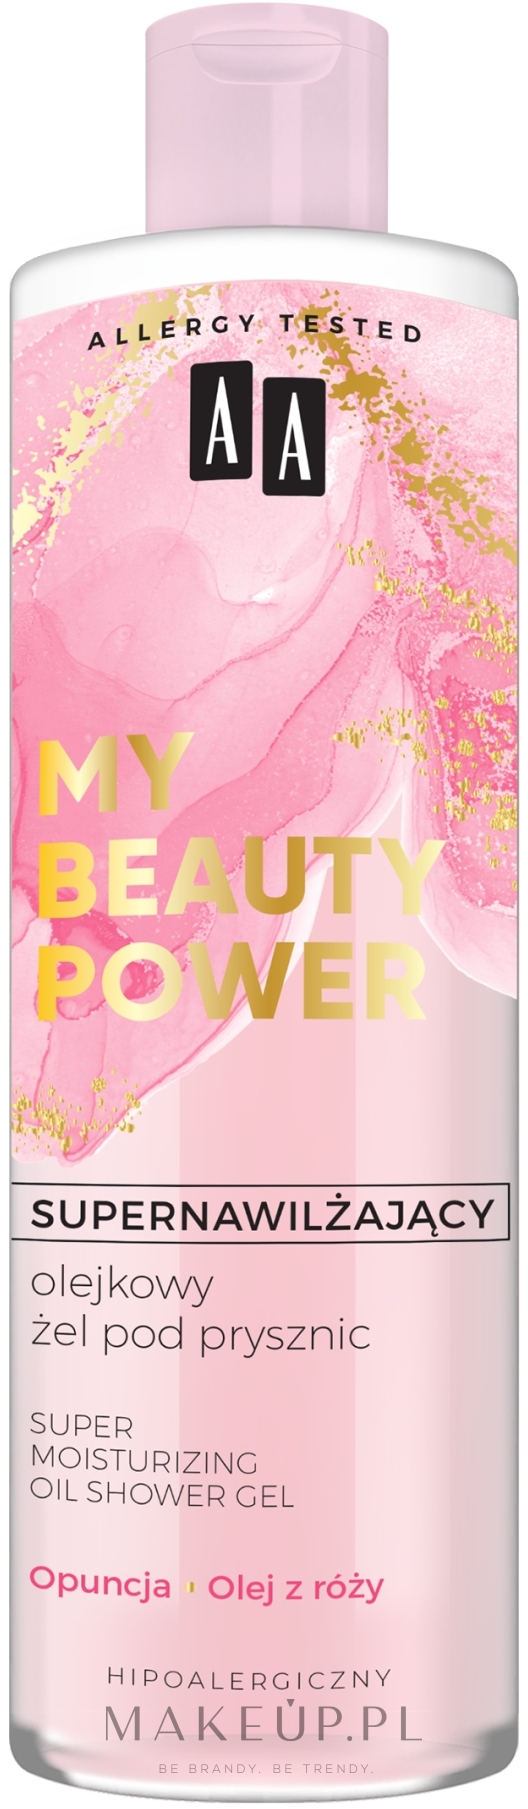 Supernawilżający olejkowy żel pod prysznic Opuncja i olej z róży - AA My Beauty Power  — Zdjęcie 400 ml